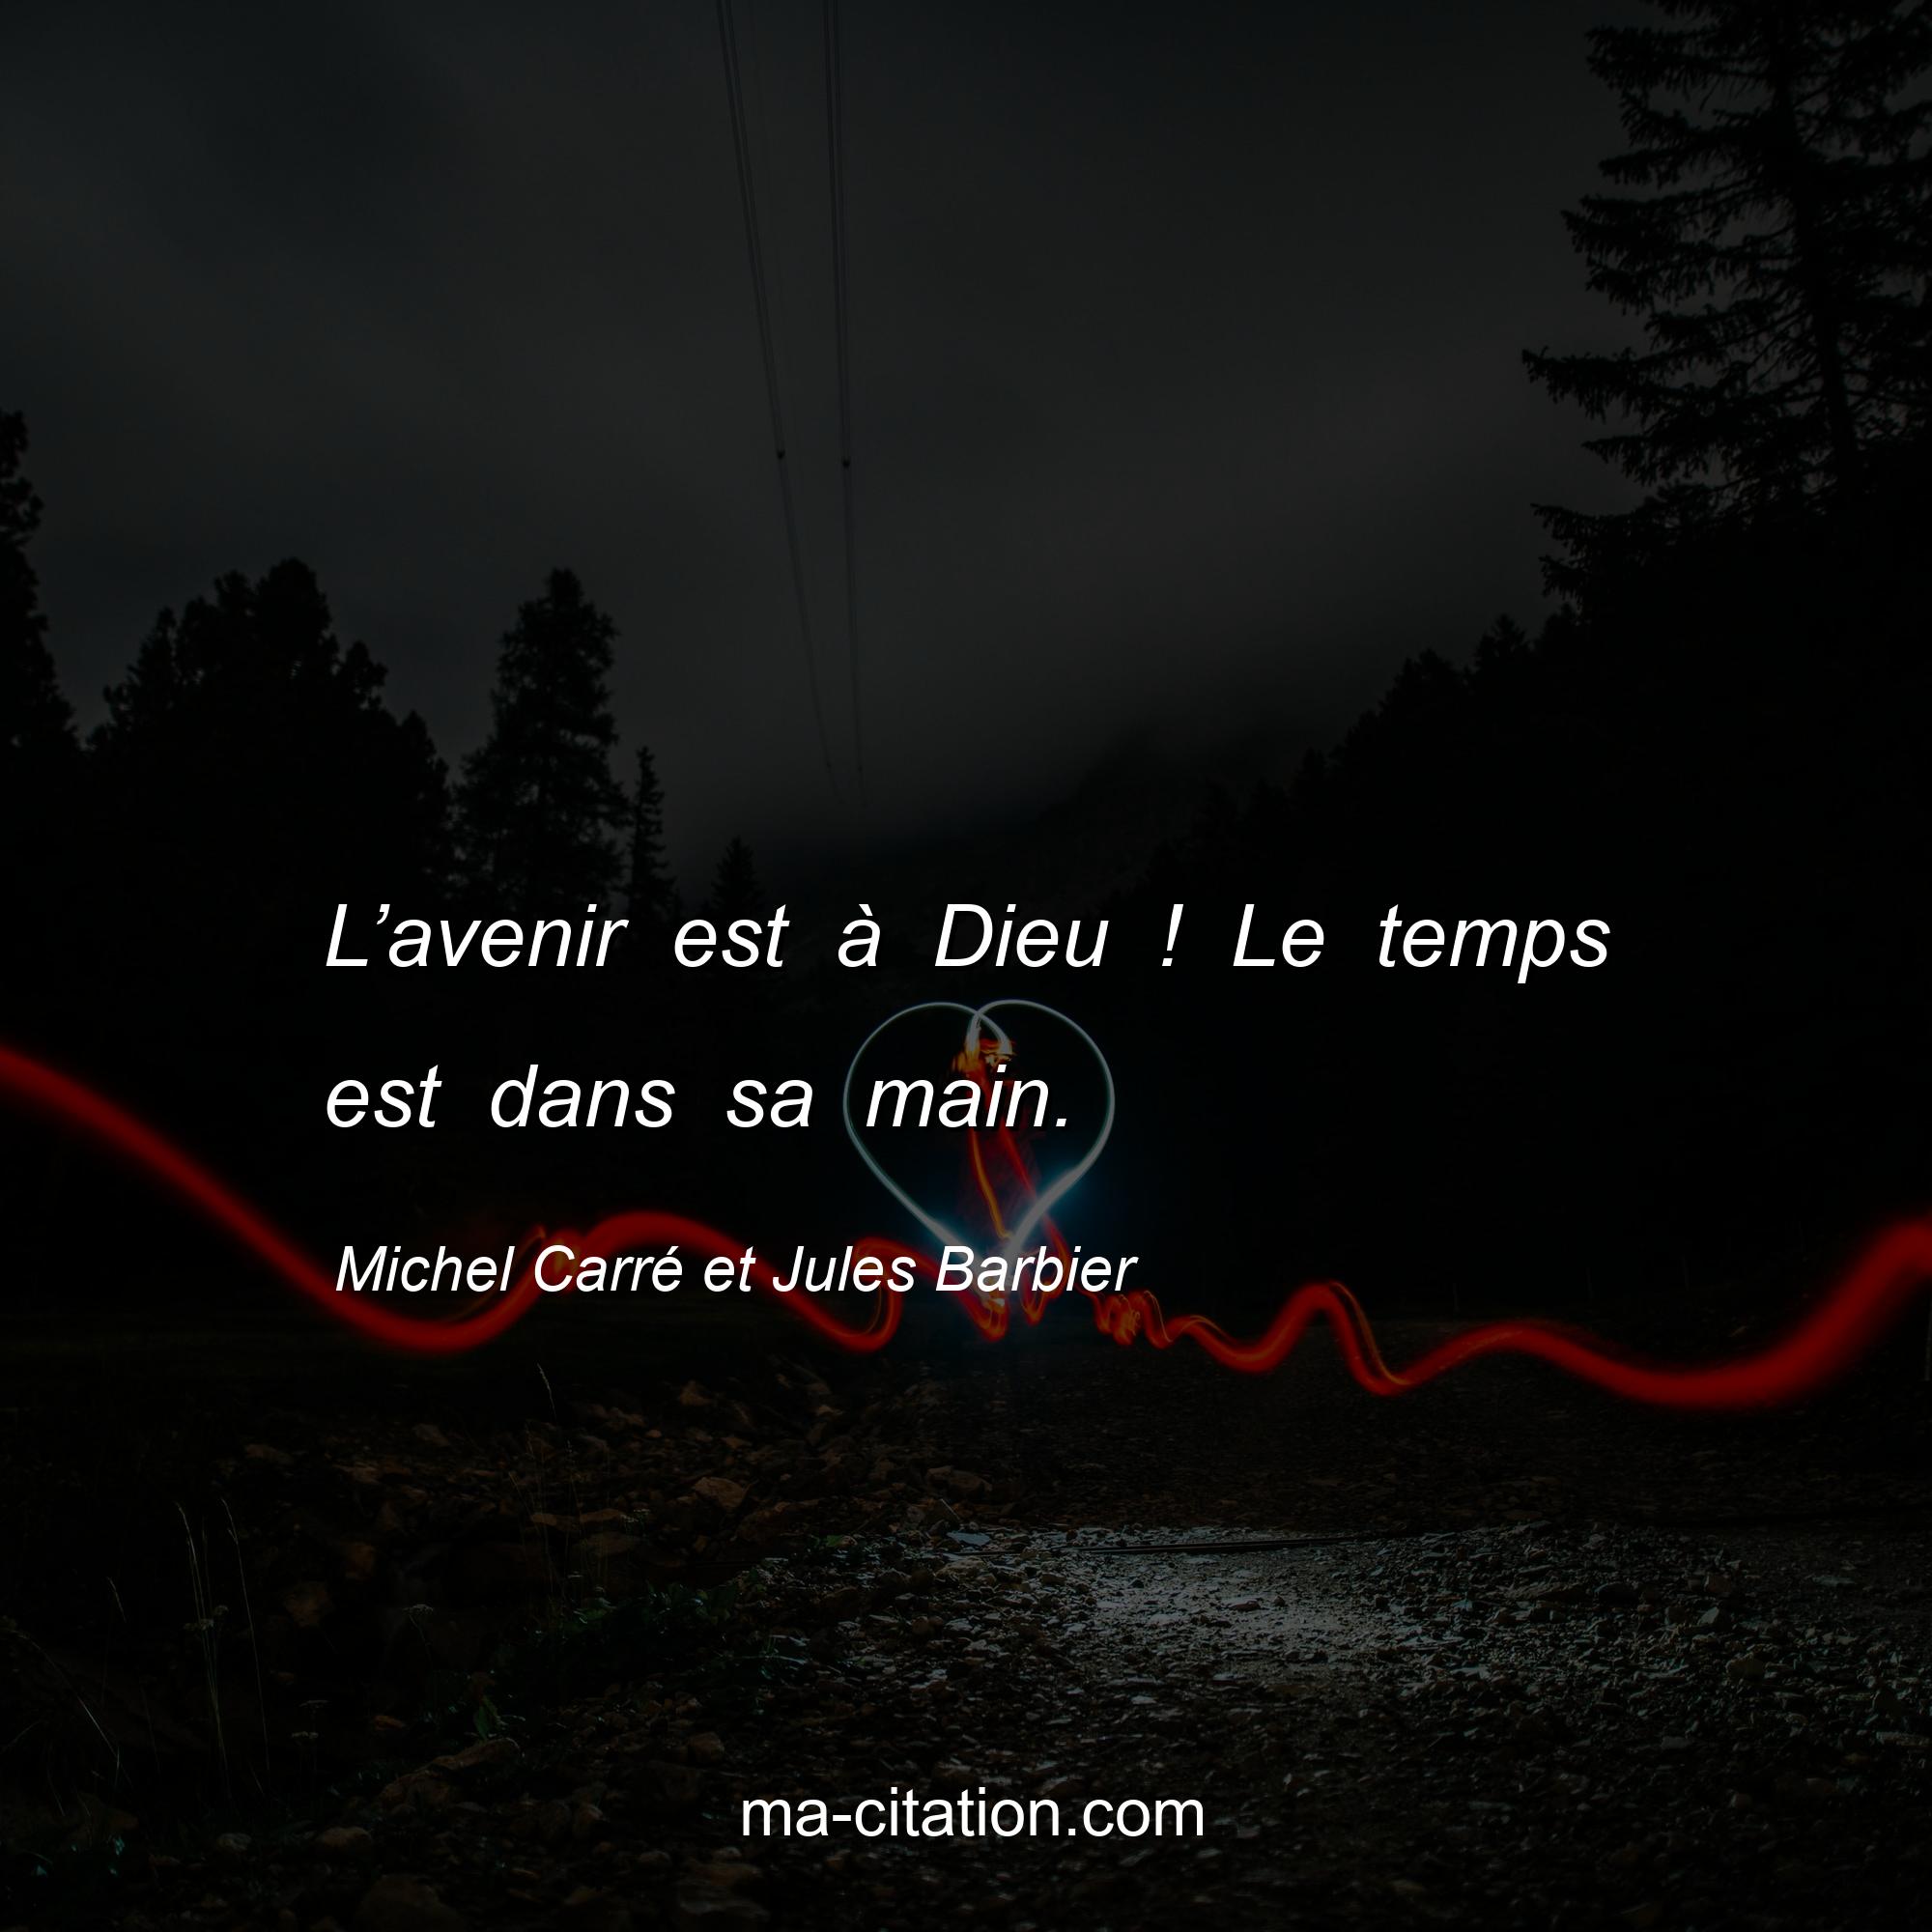 Michel Carré et Jules Barbier : L’avenir est à Dieu ! Le temps est dans sa main.